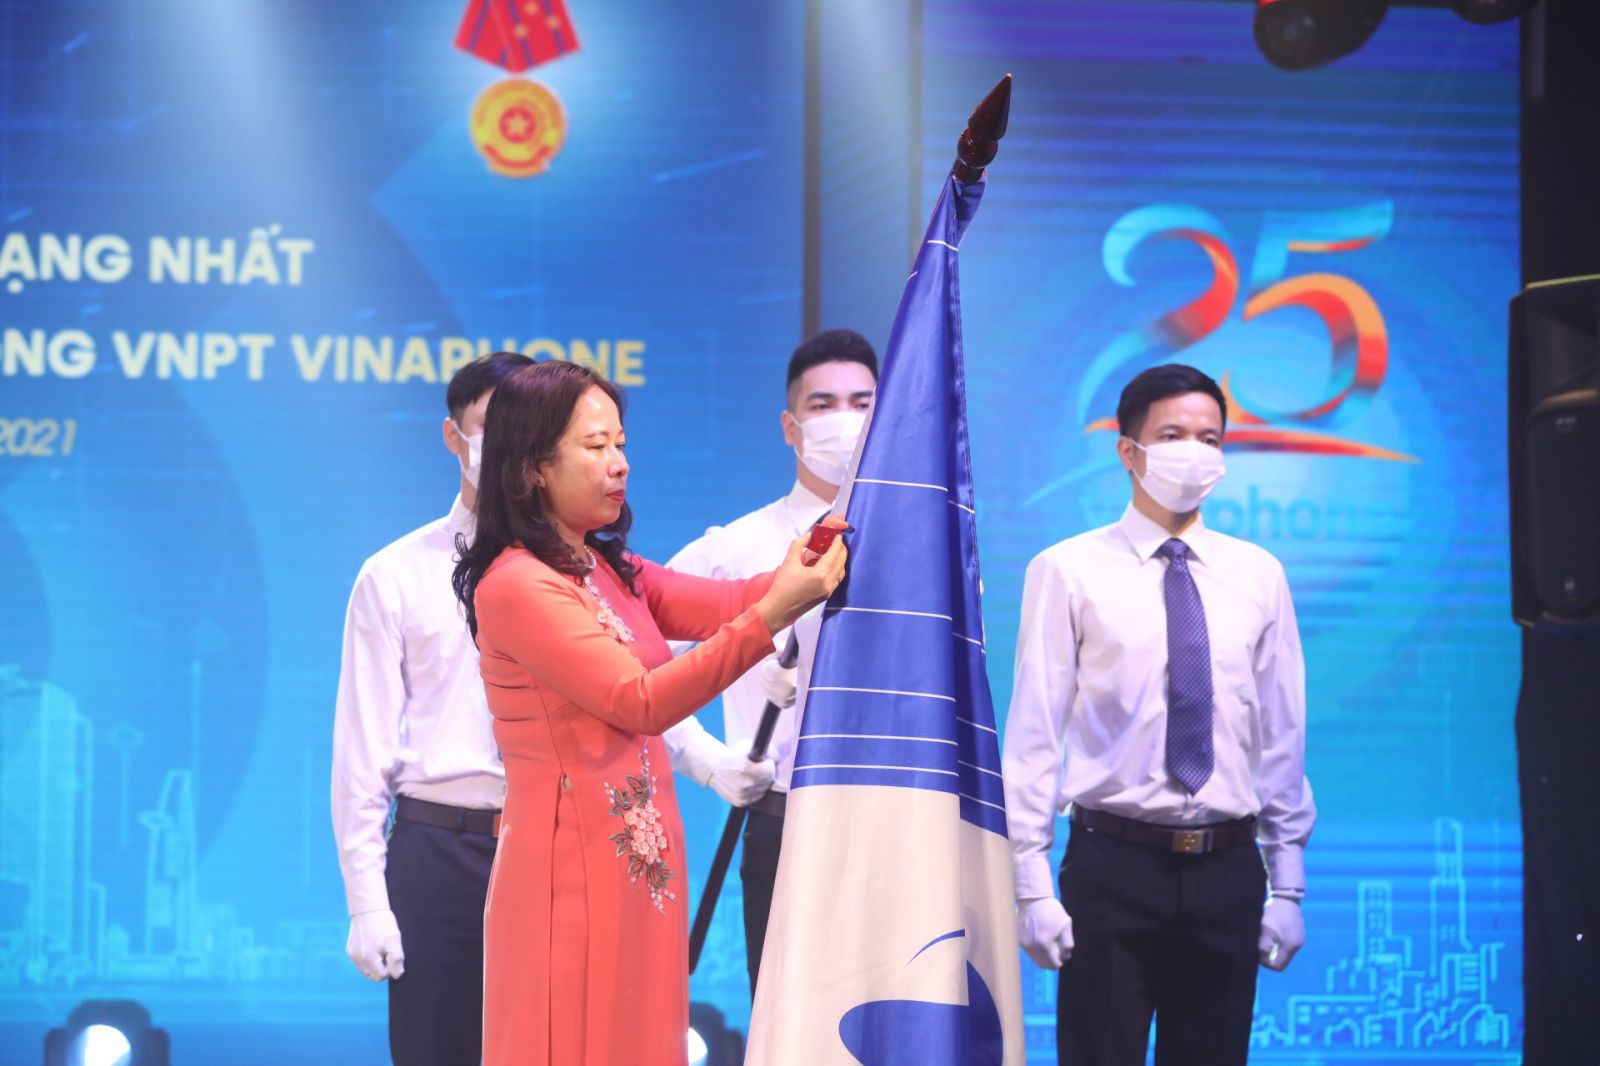 Ủy viên Ban chấp hành Trung ương Đảng, Phó Chủ tịch nước Võ Thị Ánh Xuân trao tặng Huân chương Lao động hạng Nhất cho VNPT VinaPhone. (Ảnh: Minh Quyết/TTXVN)